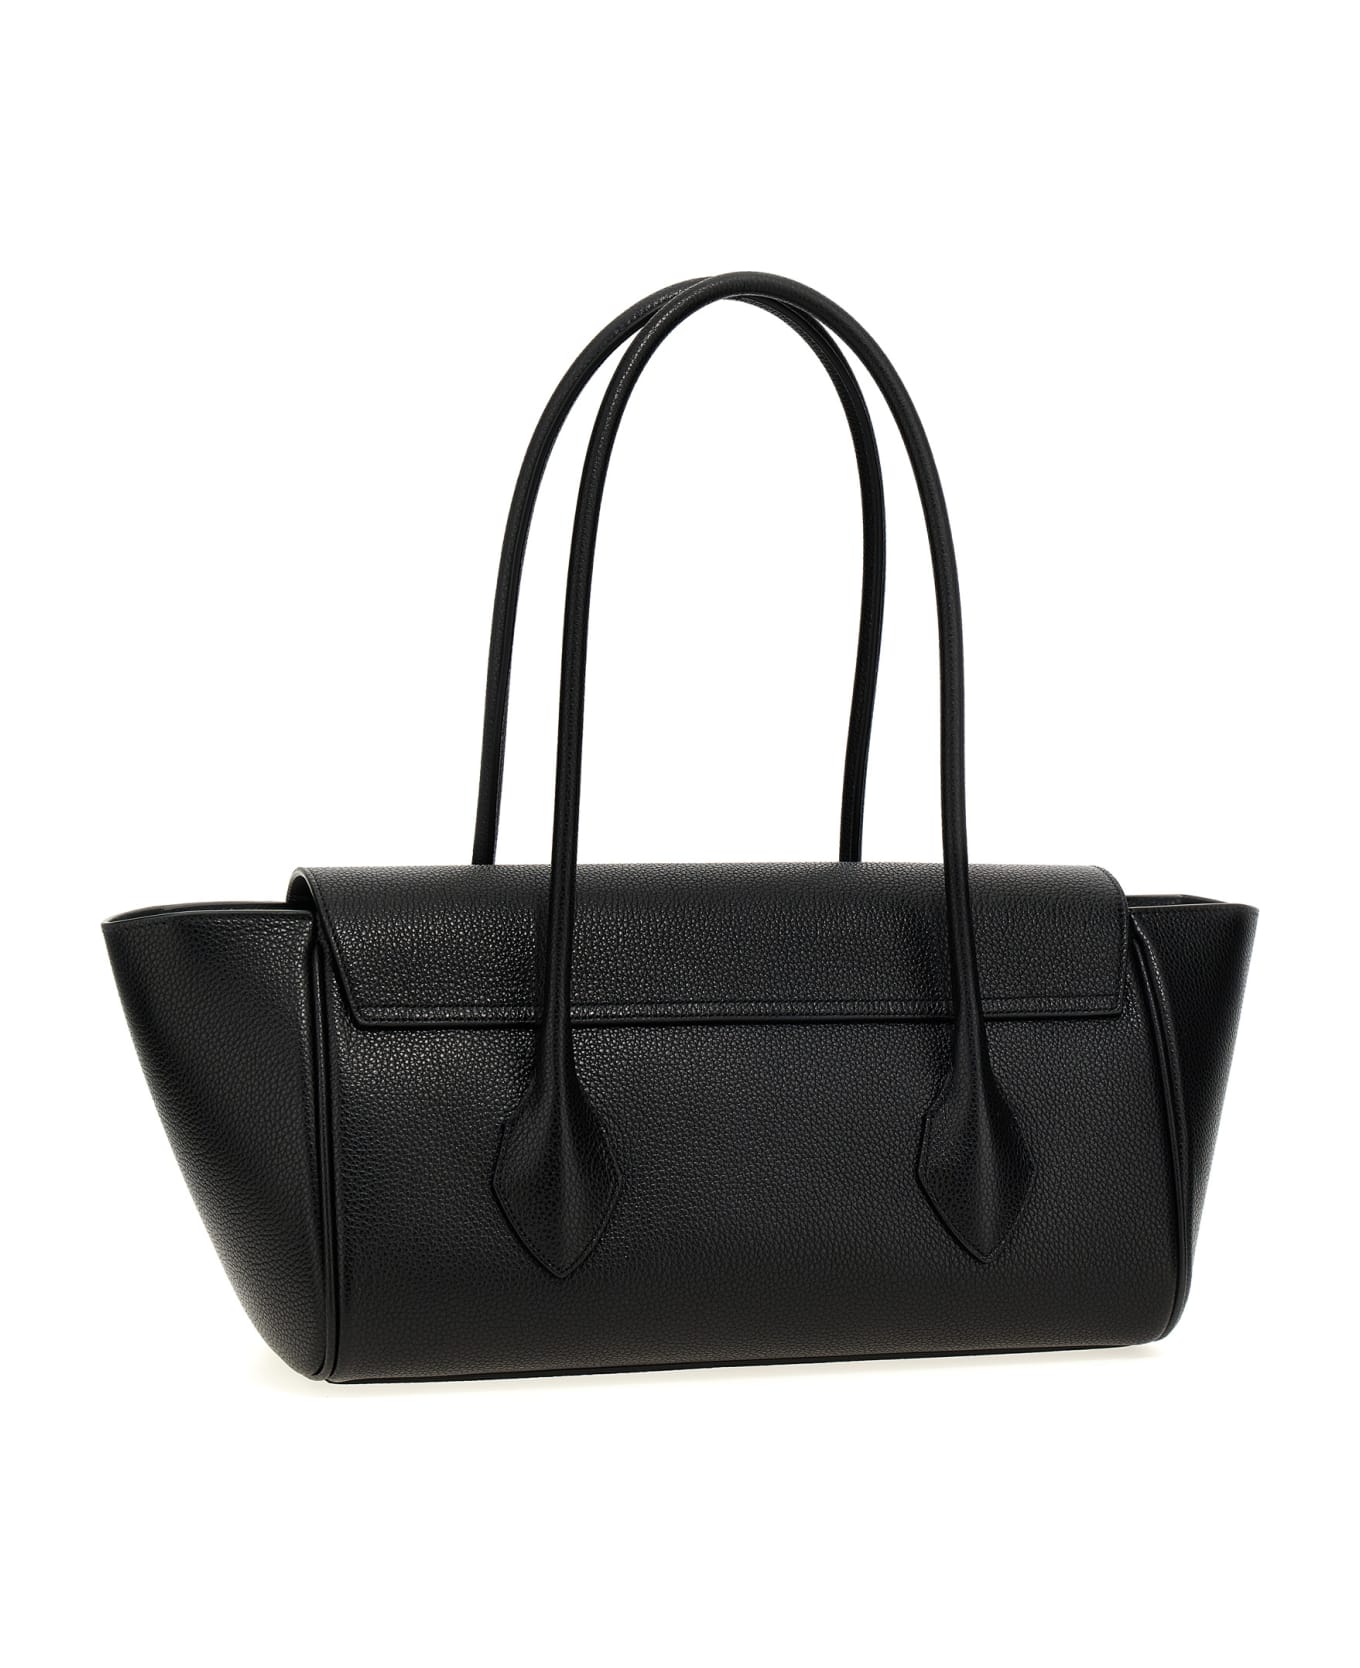 Ferragamo 'east-west Medium' Shopping Bag - Black  